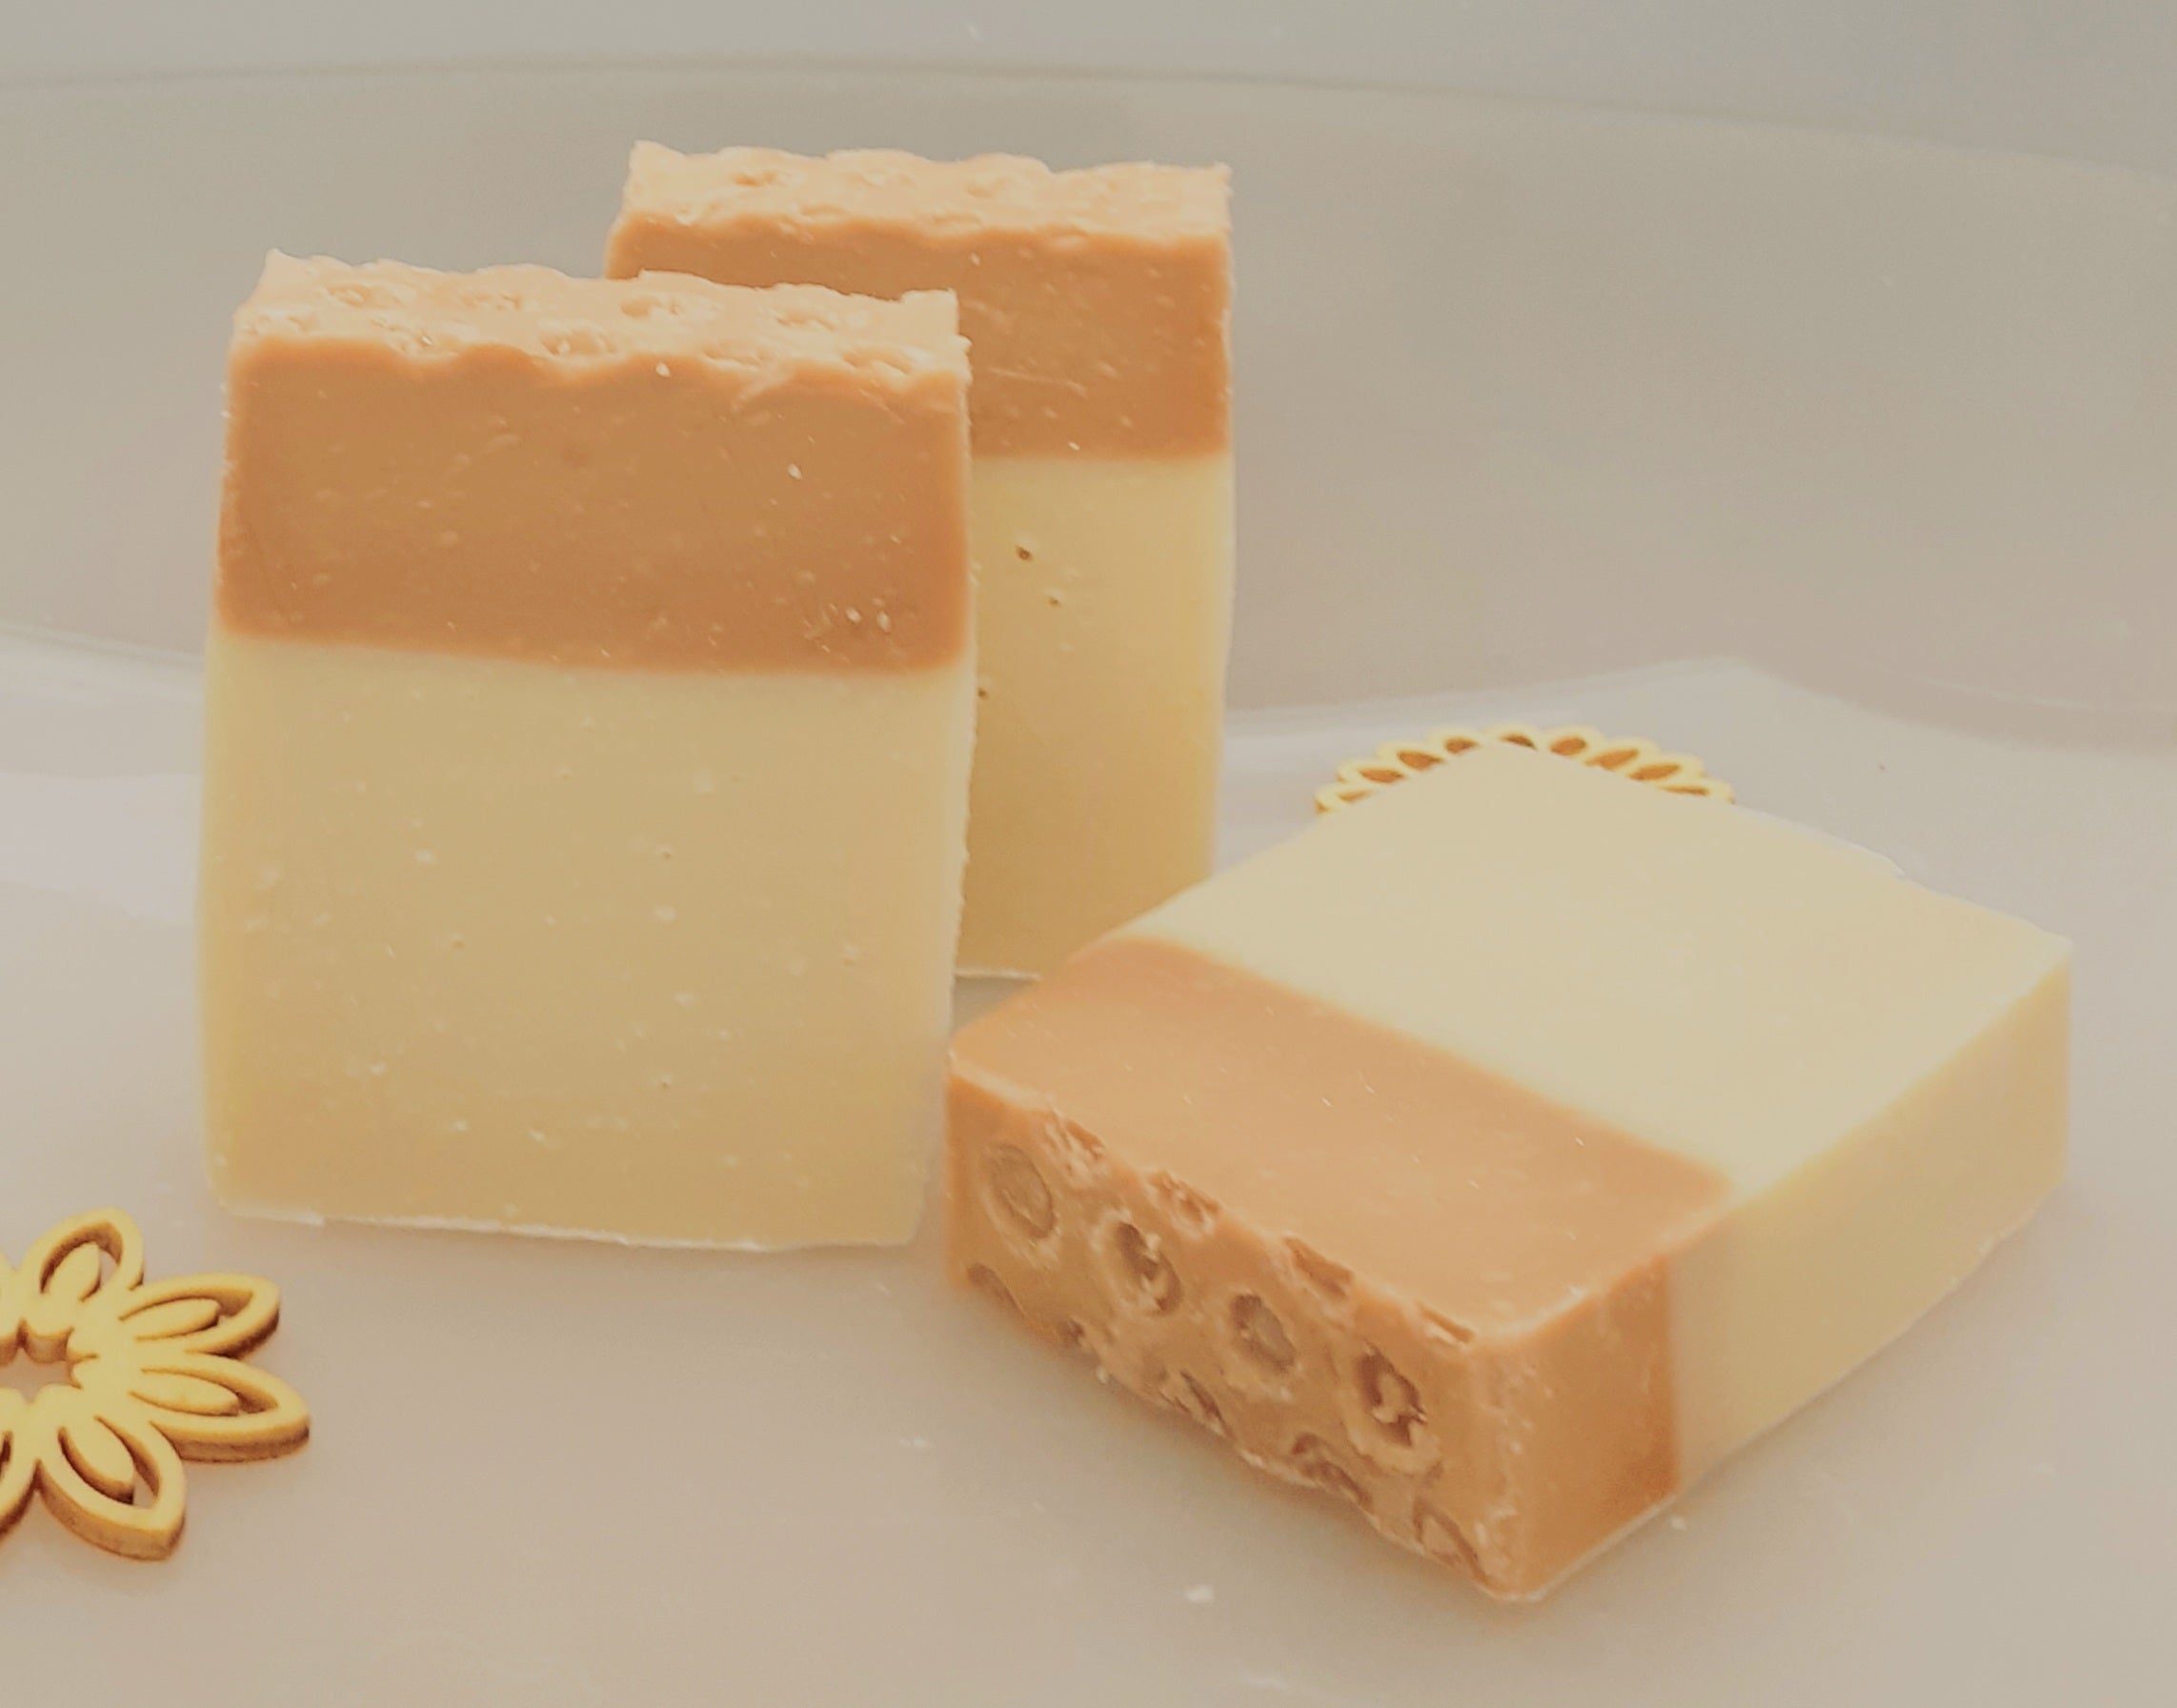 Savon miel glycérine pour peaux sensibles et délicates, 3 unités – Natural  : Pains de savon